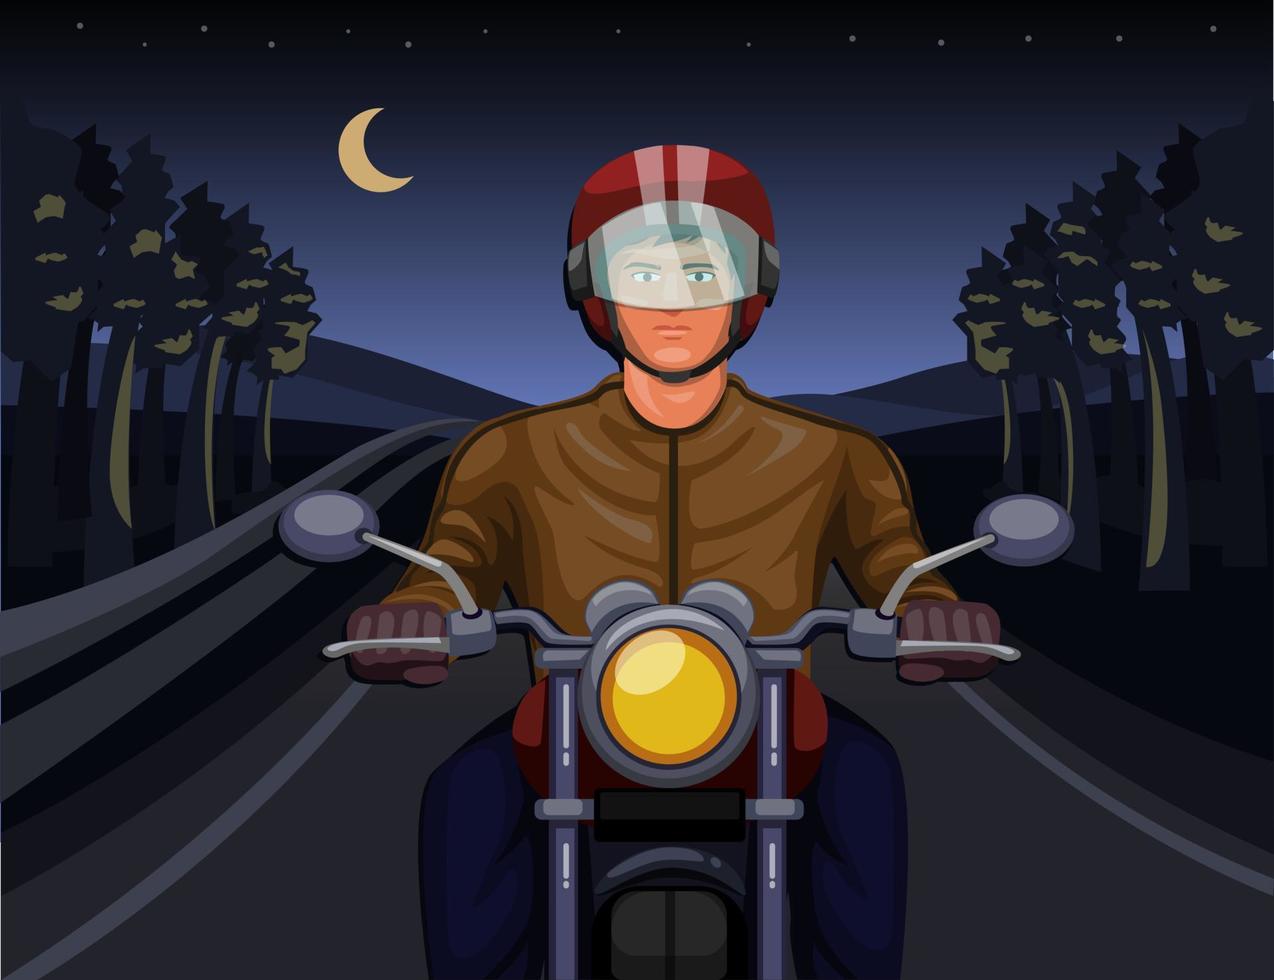 guida notturna con la moto nel concetto di scena della foresta oscura nell'illustrazione del fumetto vettore